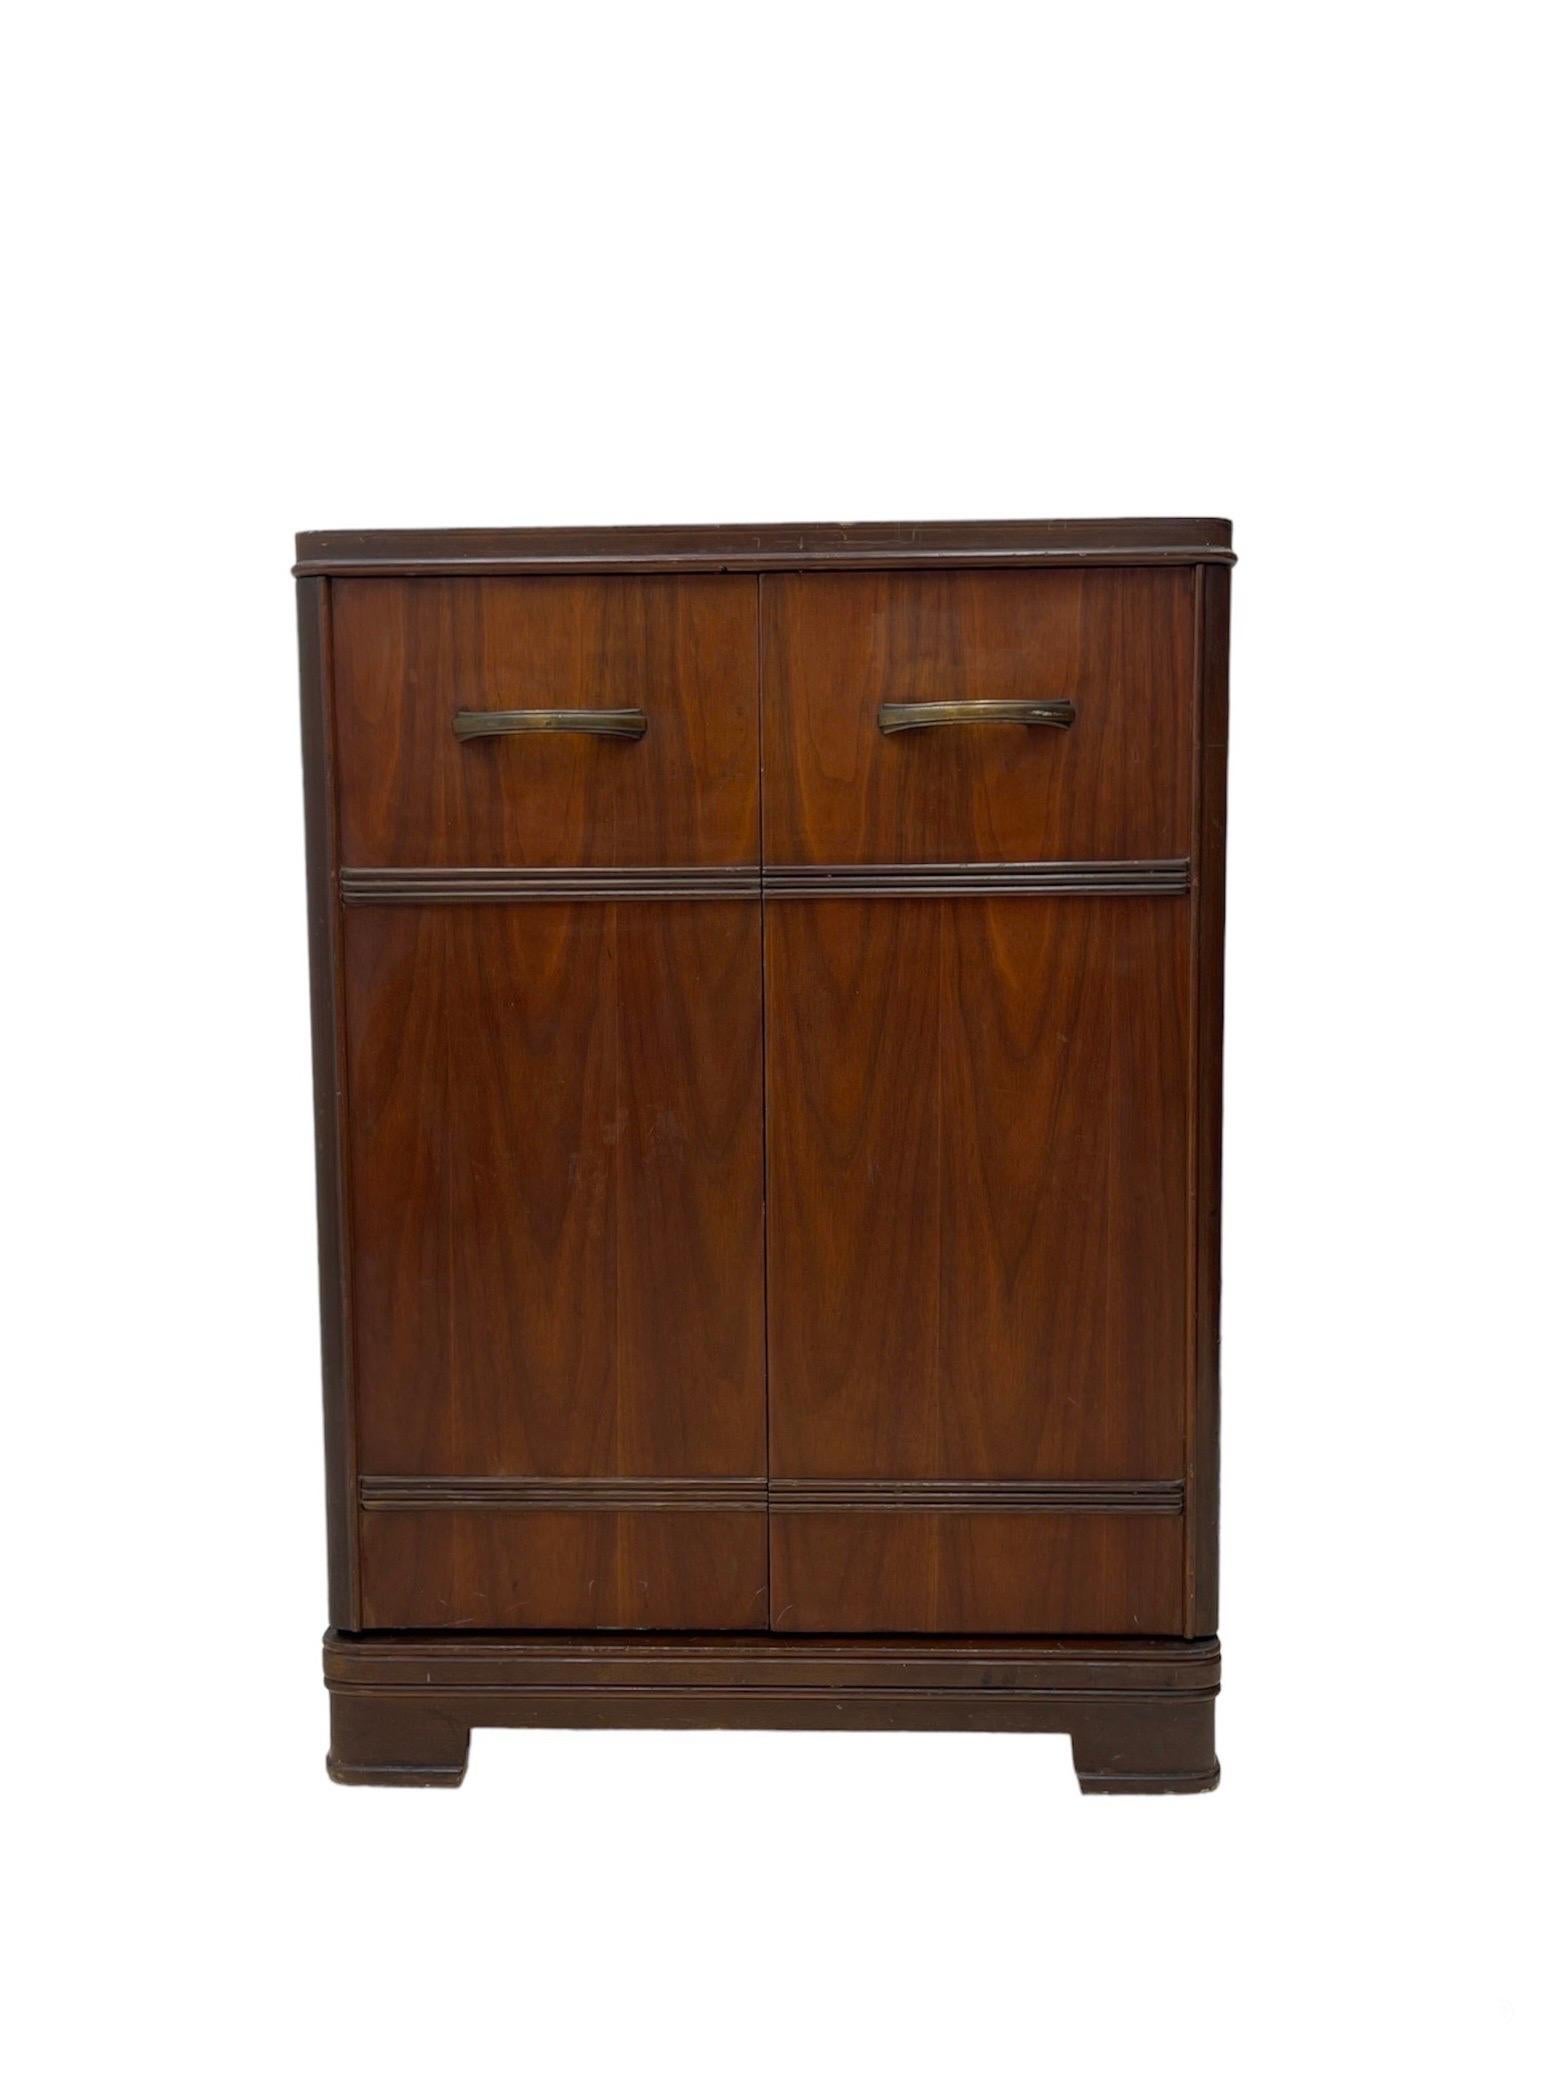 Vintage Art Deco cabinet storage.

Dimensions. 22 W ; 16 1/2 D ; 30 H.